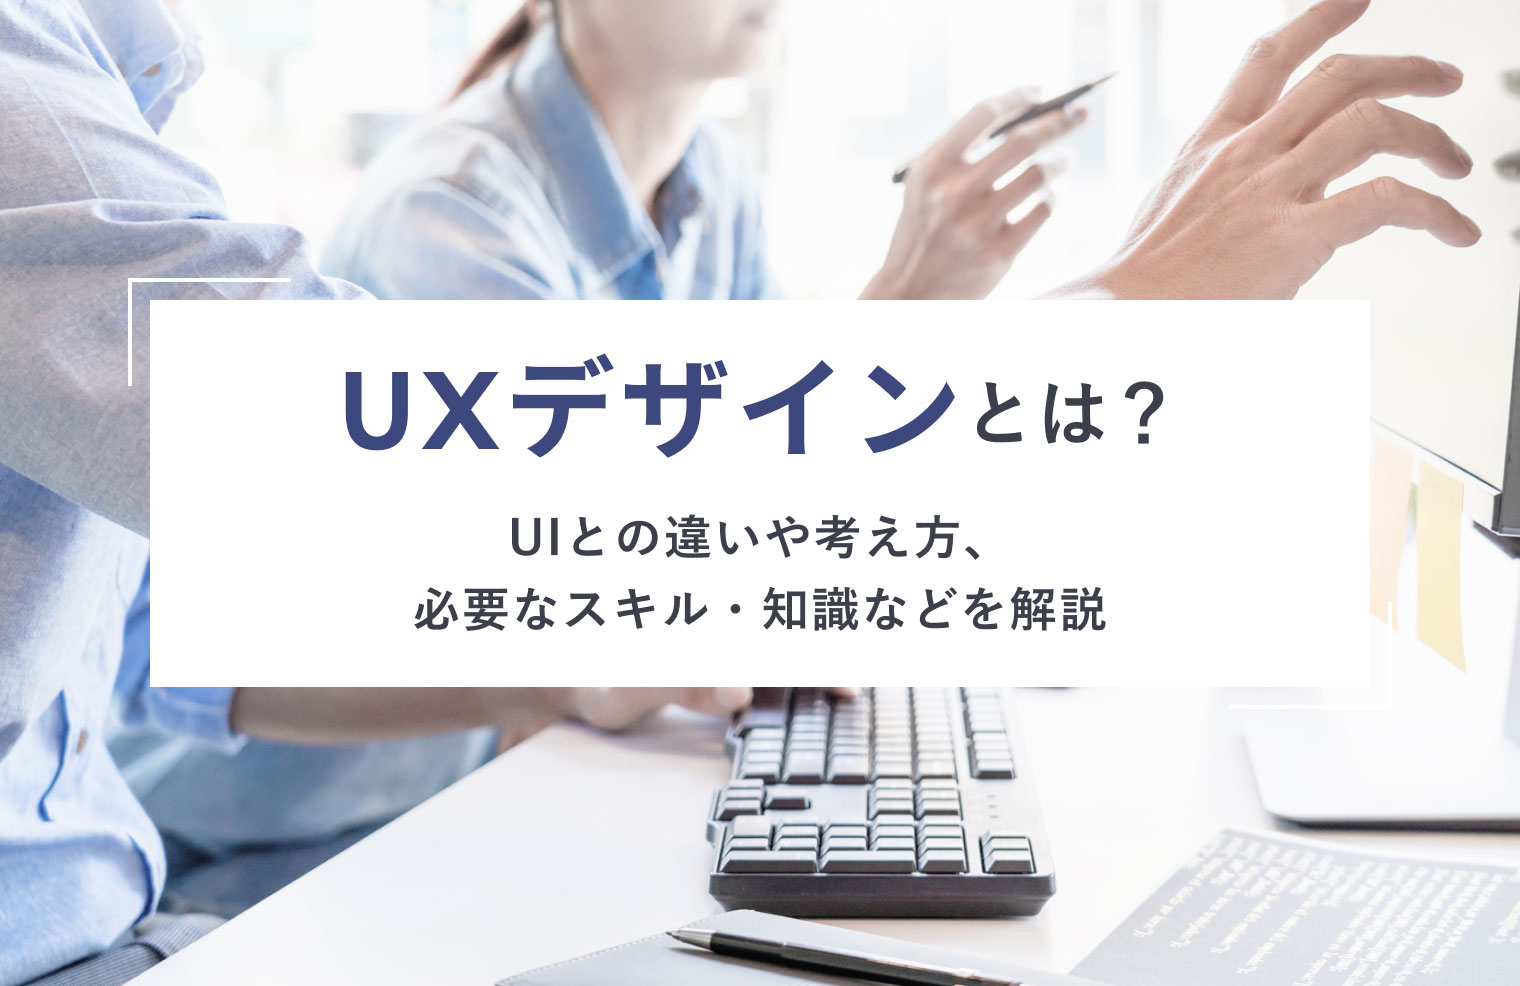 UXデザインとは？UIとの違いや考え方、必要なスキル・知識などを解説